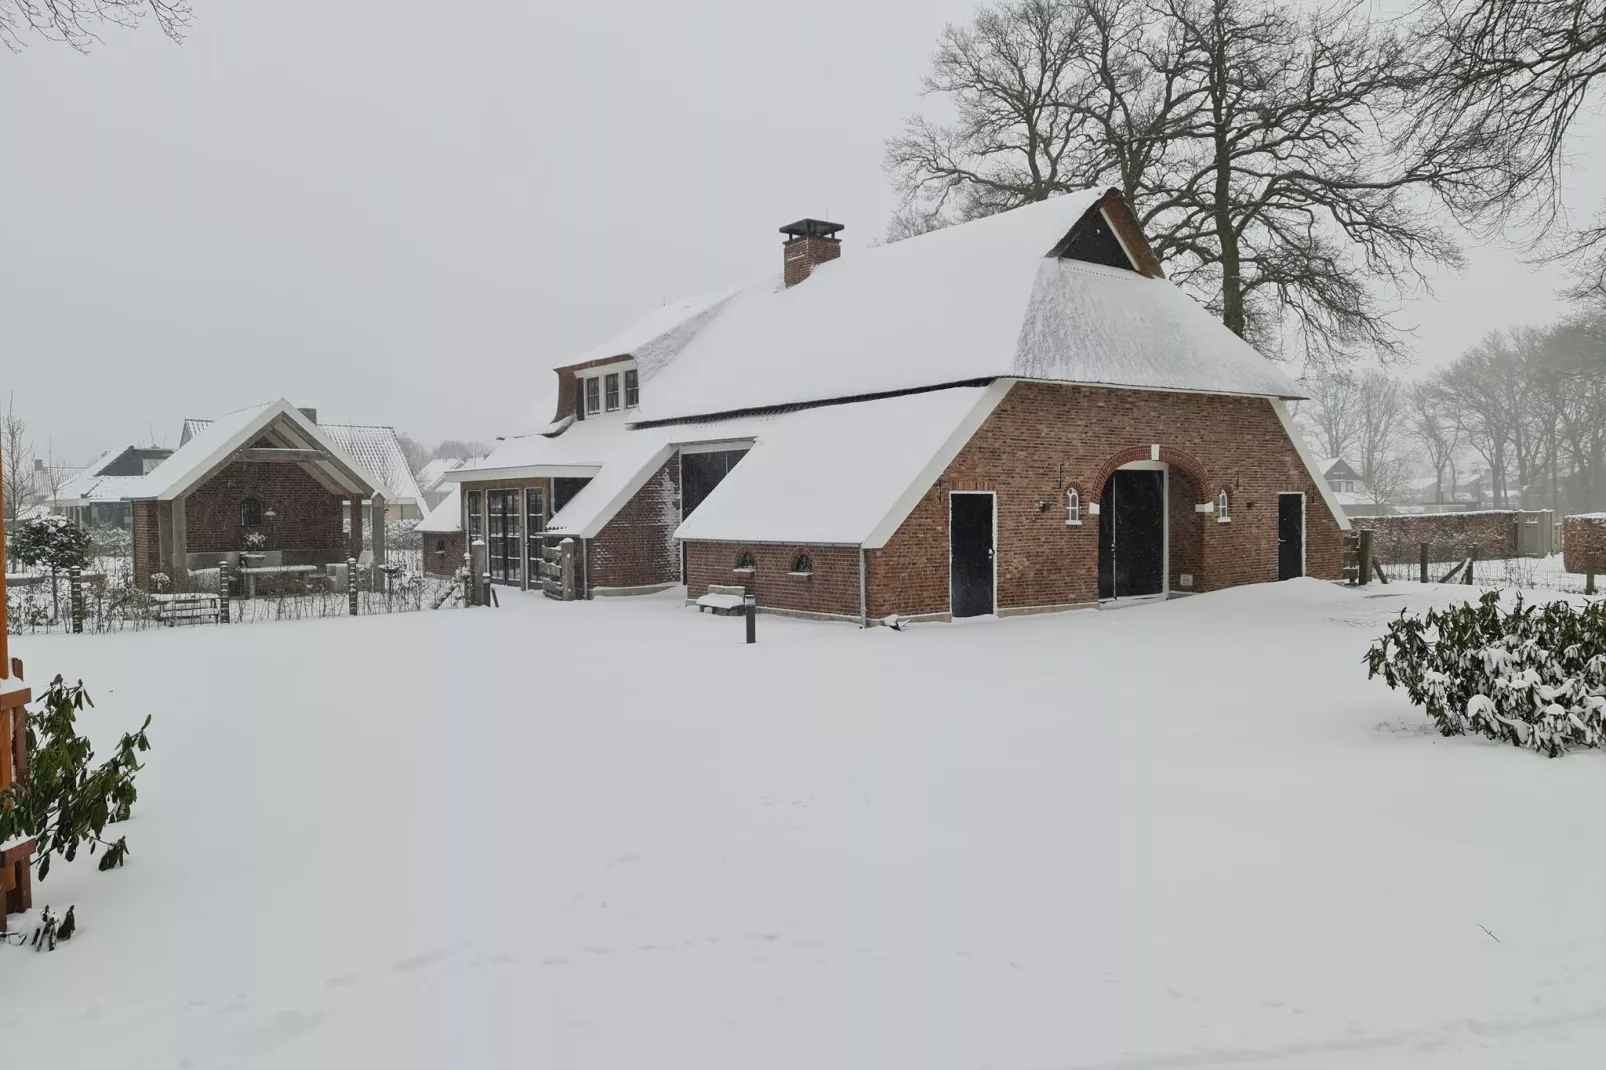 Erve Olde Sasbrink-Exterieur winter